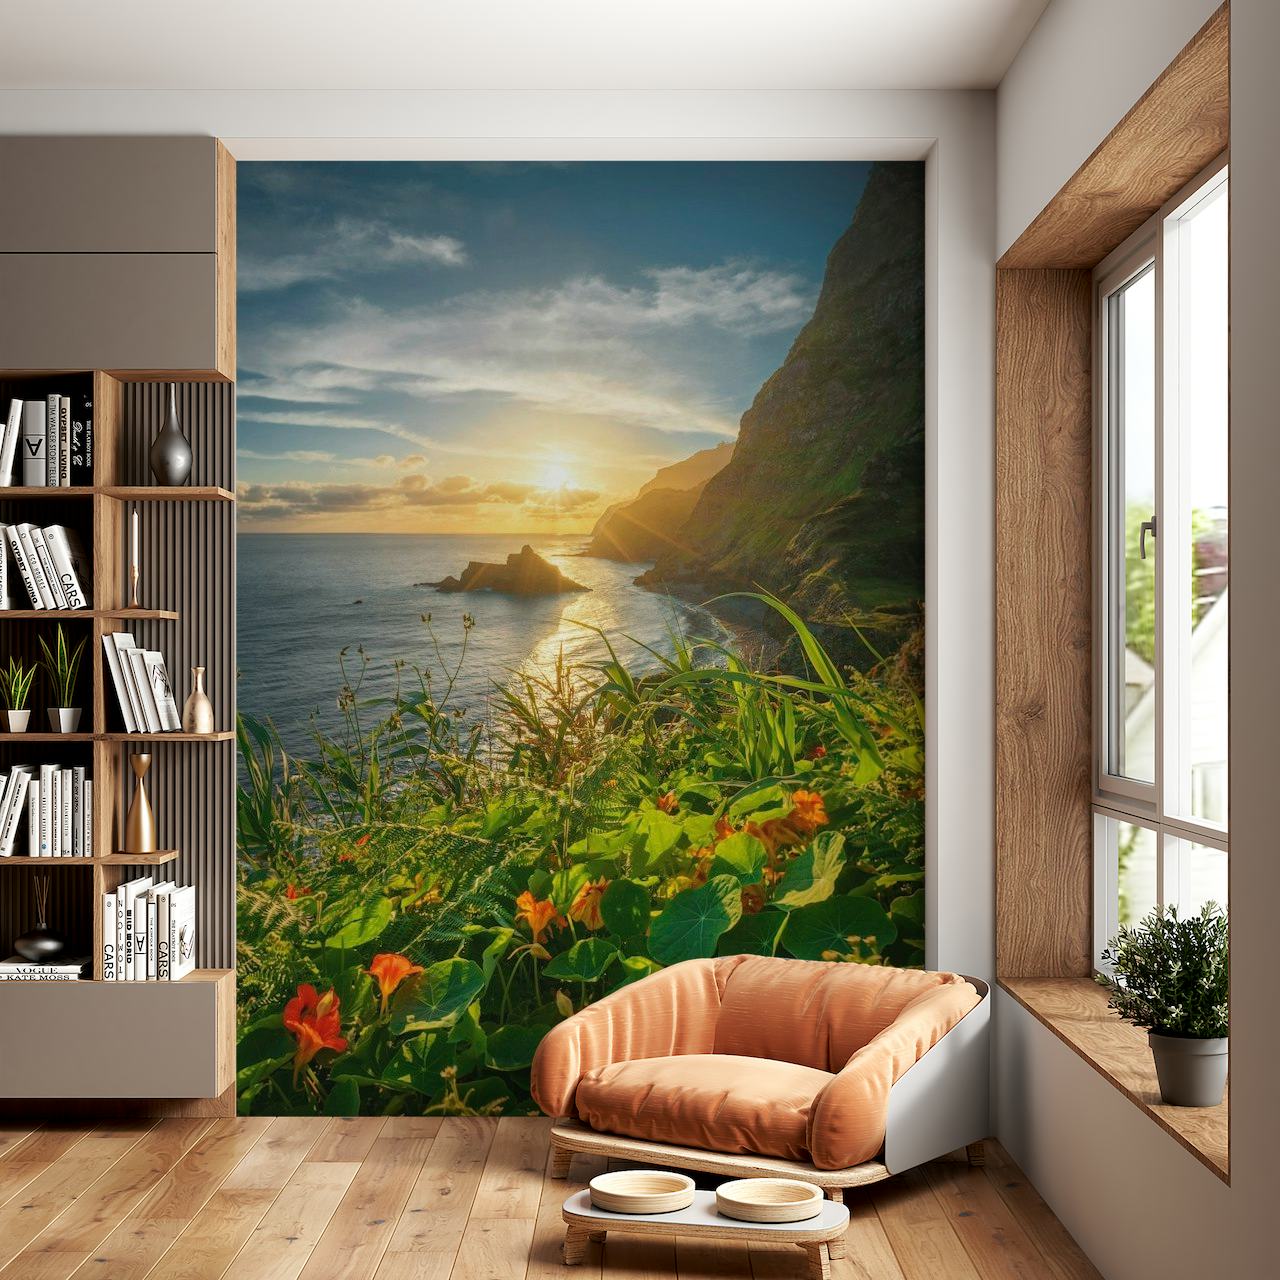 Východ slunce nad klidným oceánem s živými tropickými květinami a bujnou zelení na nástěnné malbě pobřežního útesu